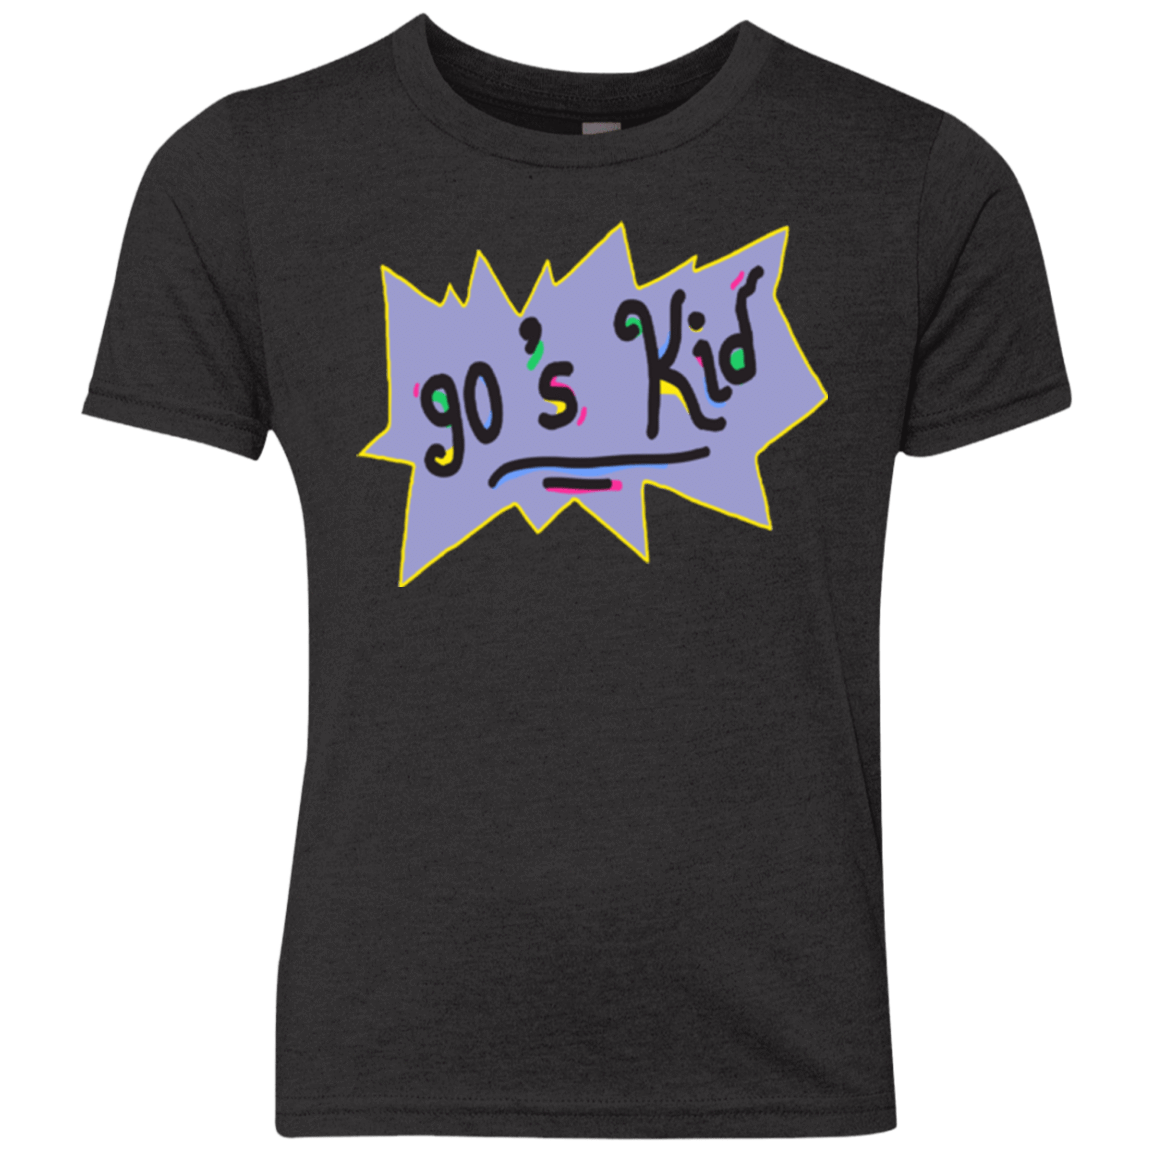 T-Shirts Vintage Black / YXS 90's Kid Youth Triblend T-Shirt